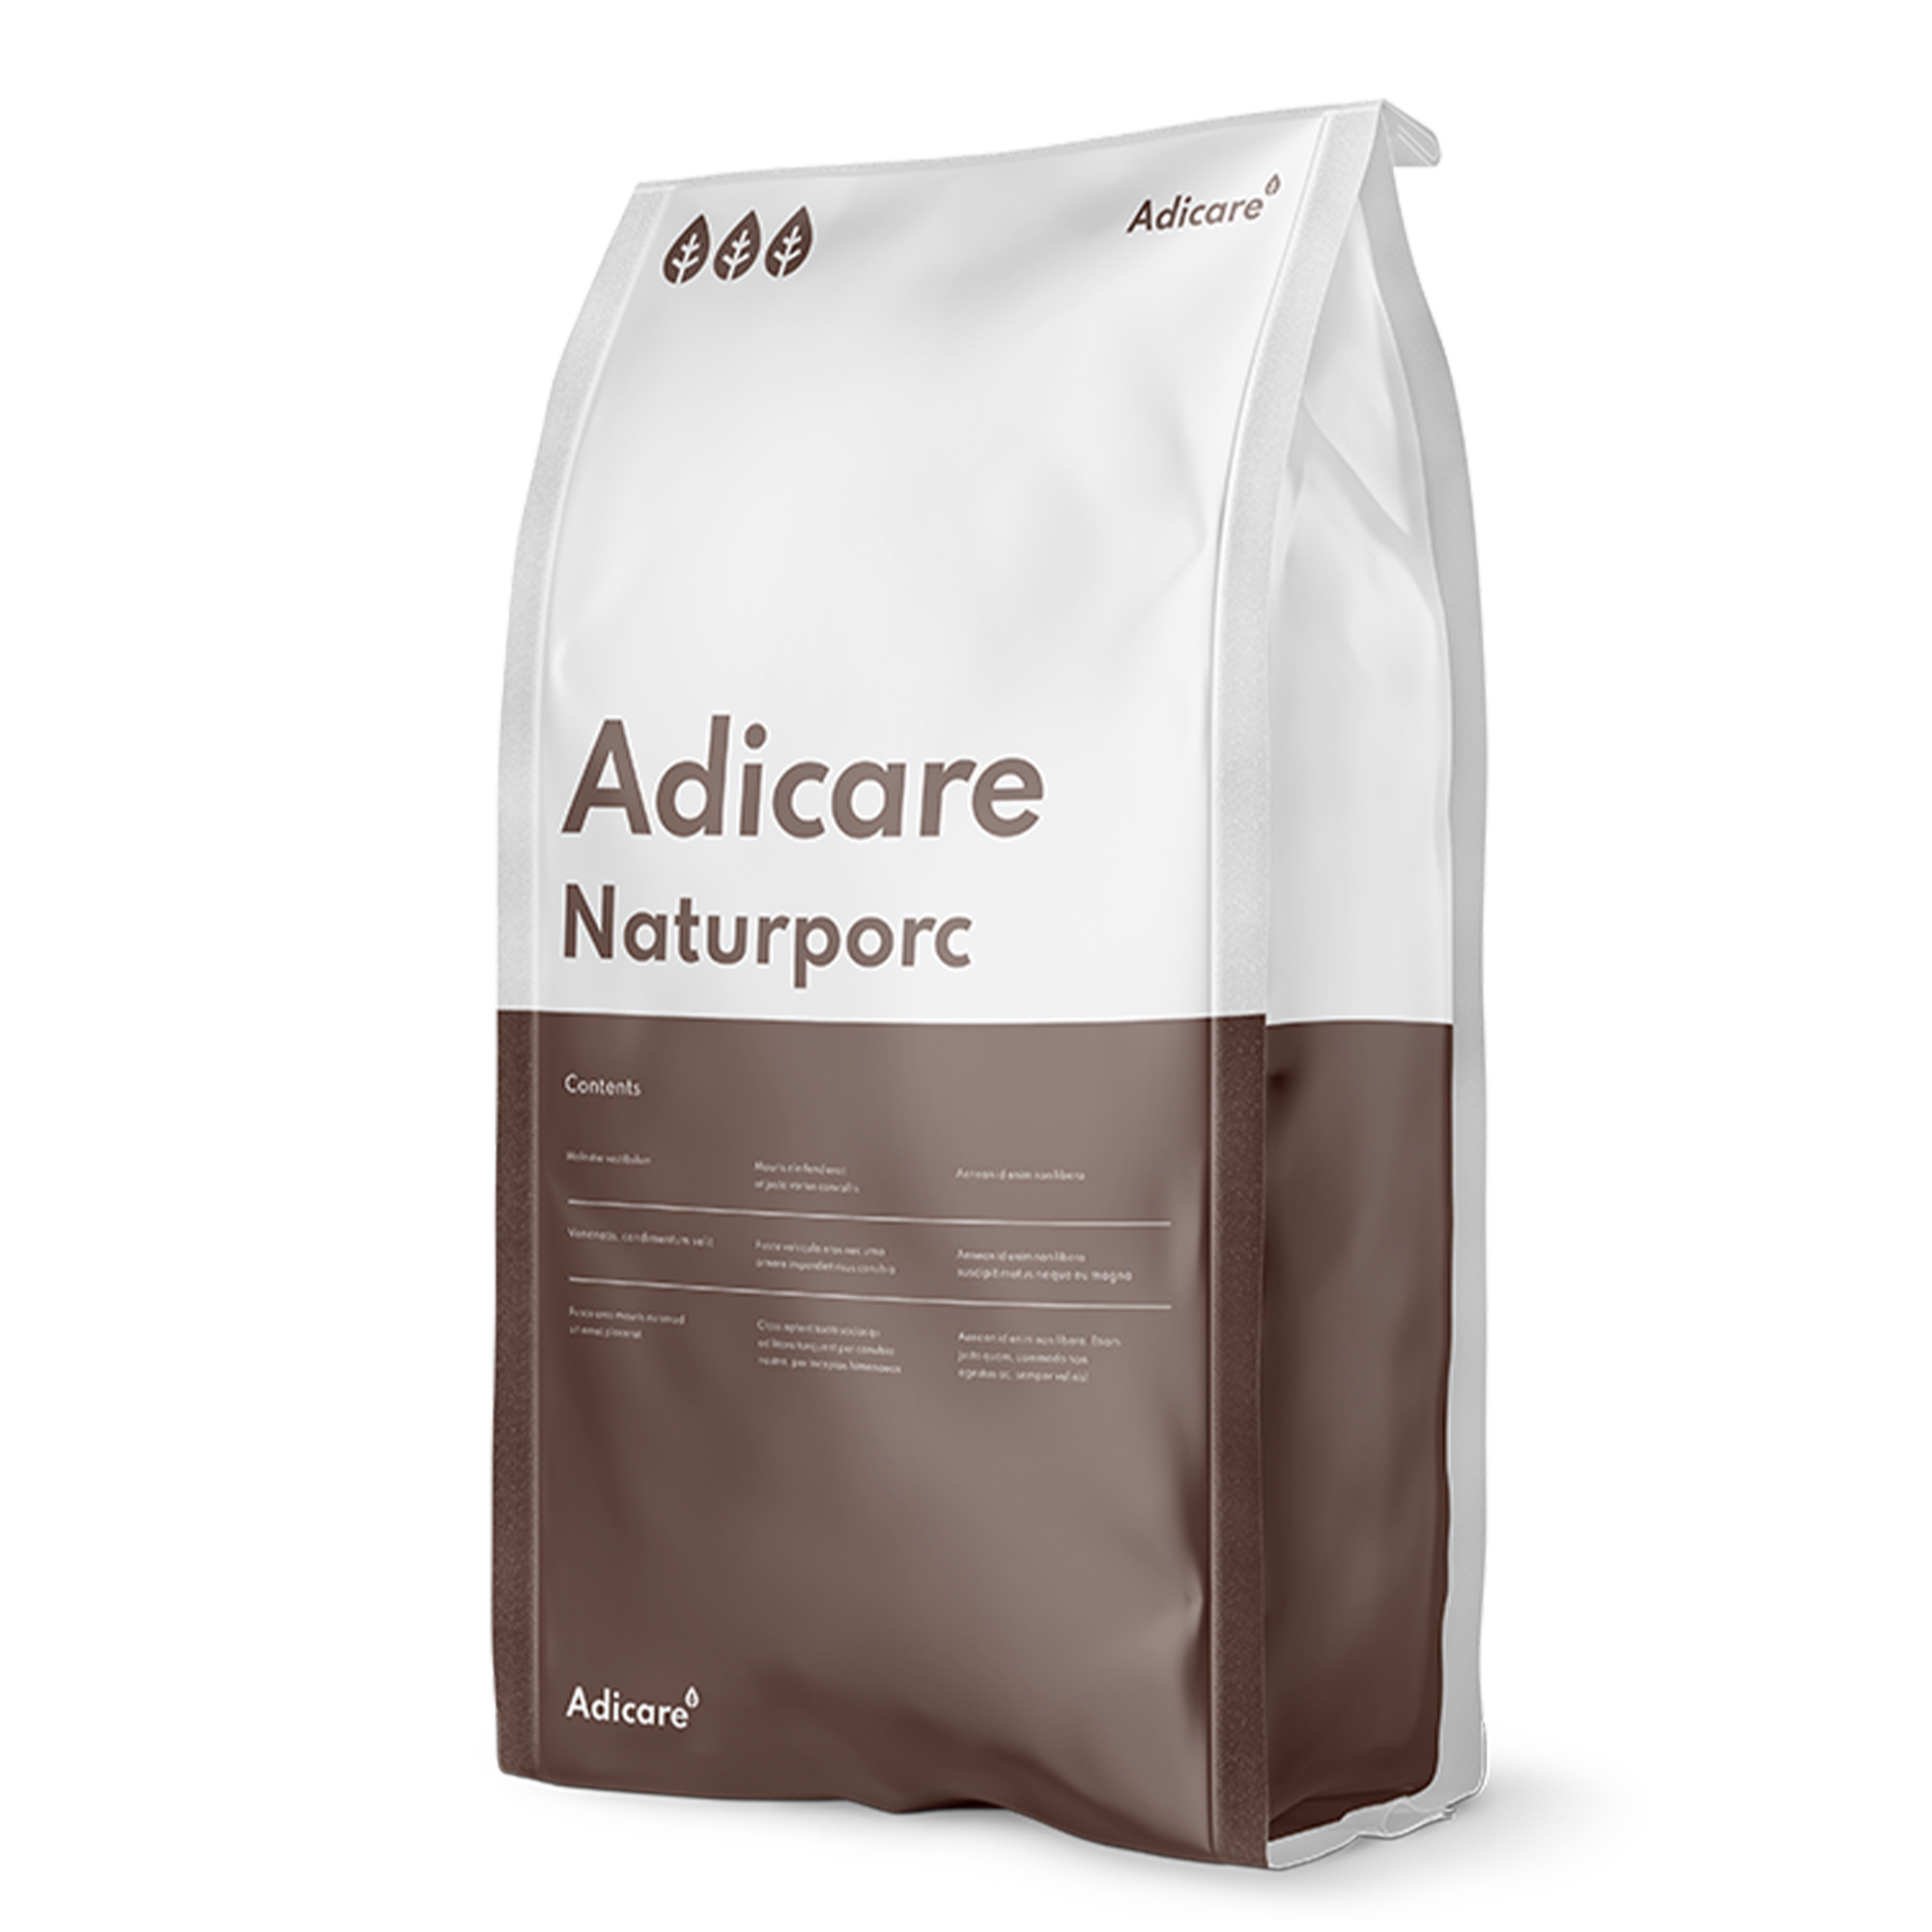 Adicare Naturporc